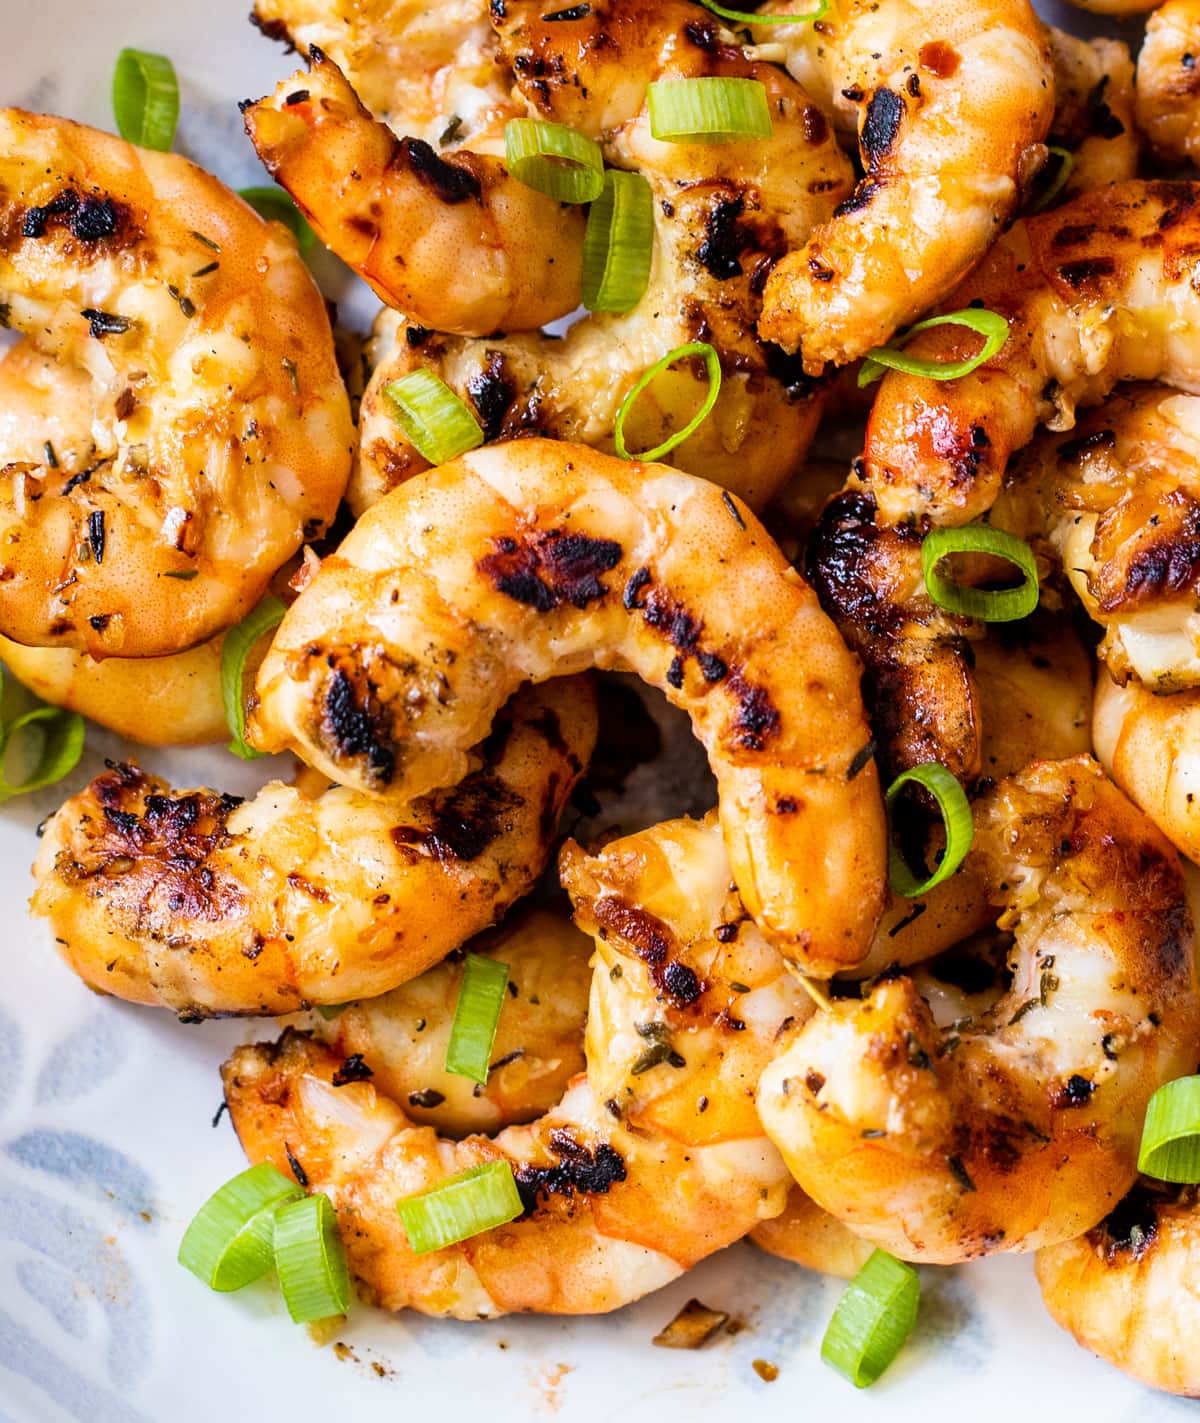 8 Shrimp Marinade For Grilling - Best Picks